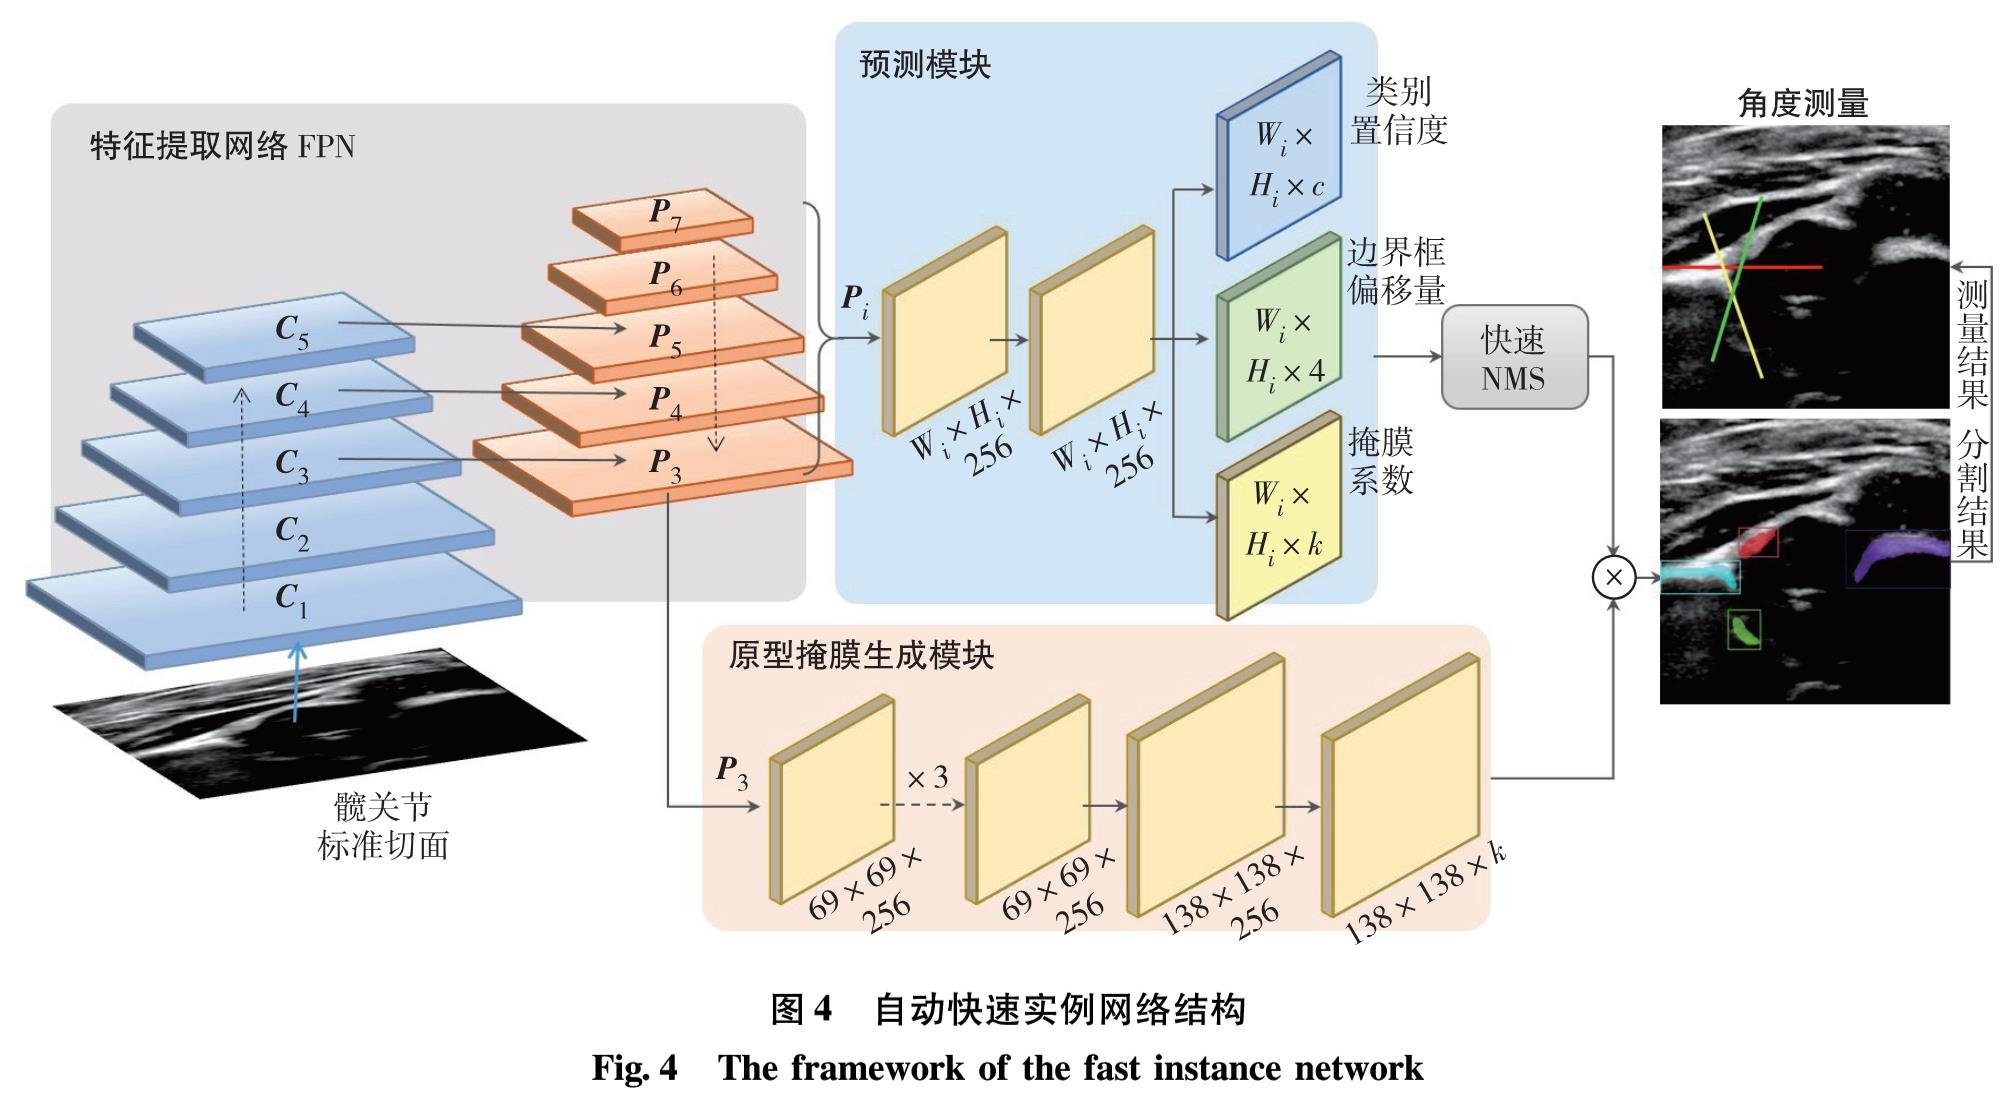 图4 自动快速实例网络结构<br/>Fig.4 The framework of the fast instance network